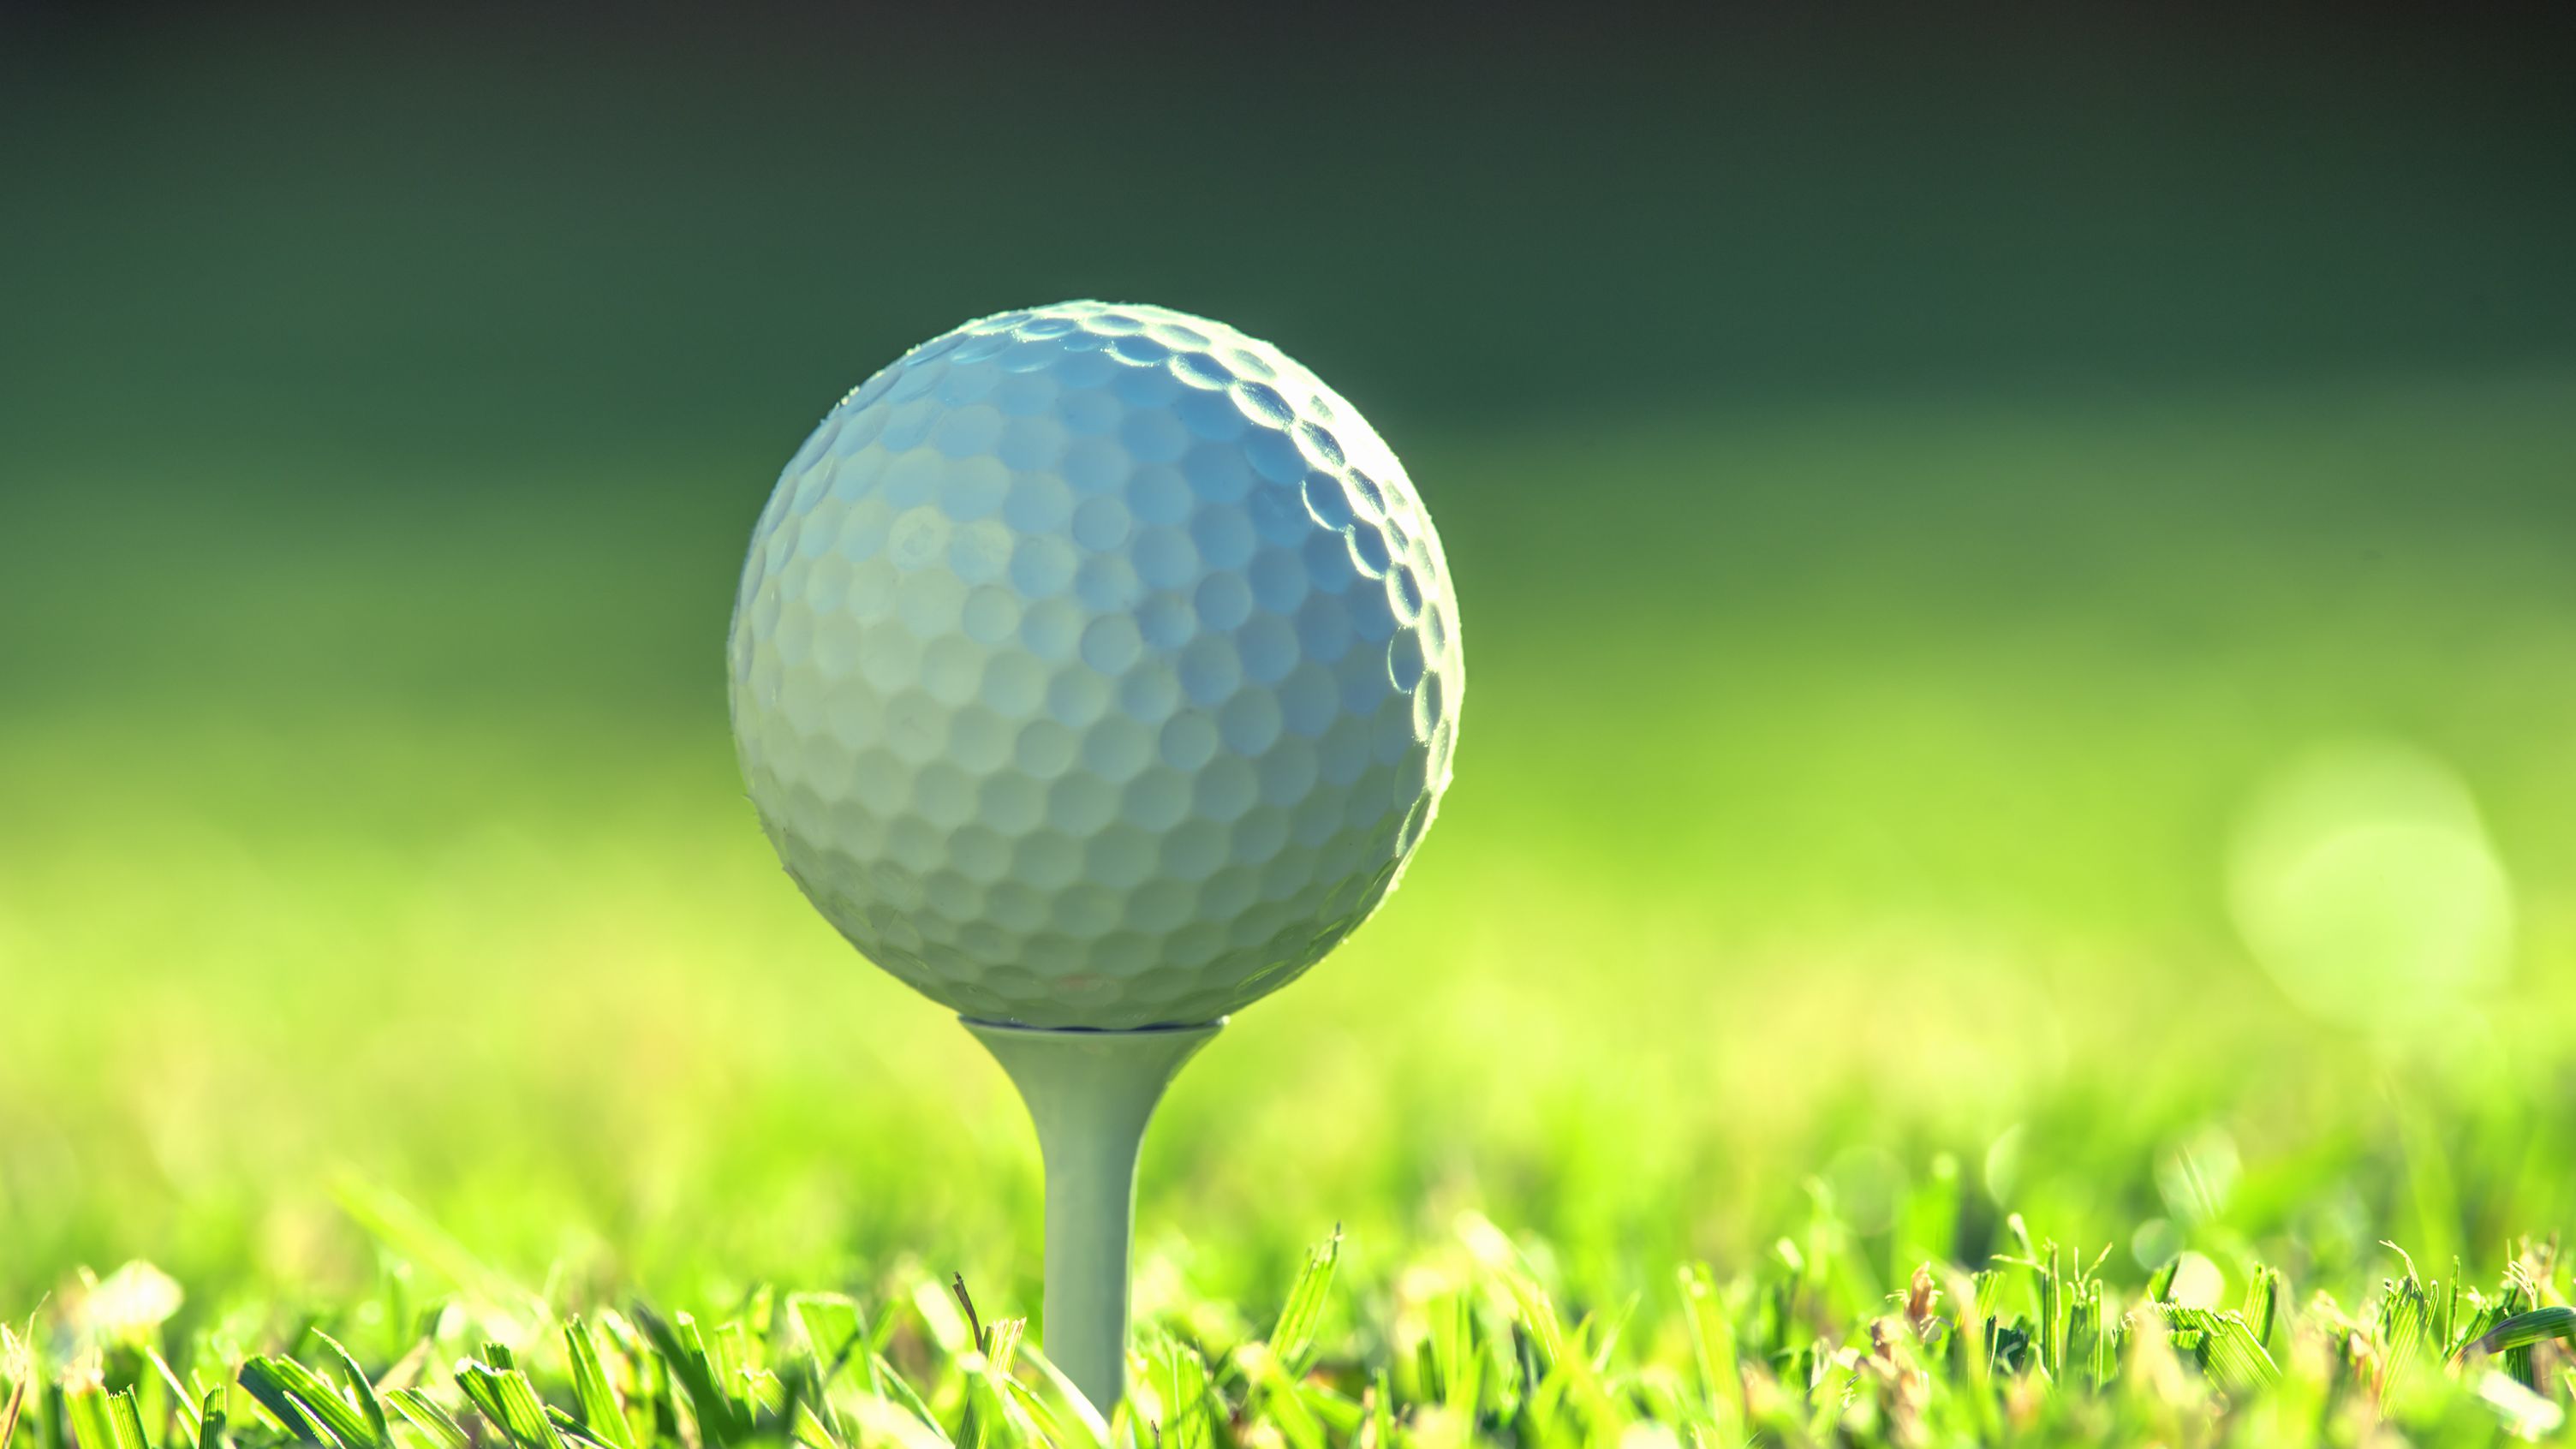 Prepare a sua partida de golfe, Suporte aplicativo Golf